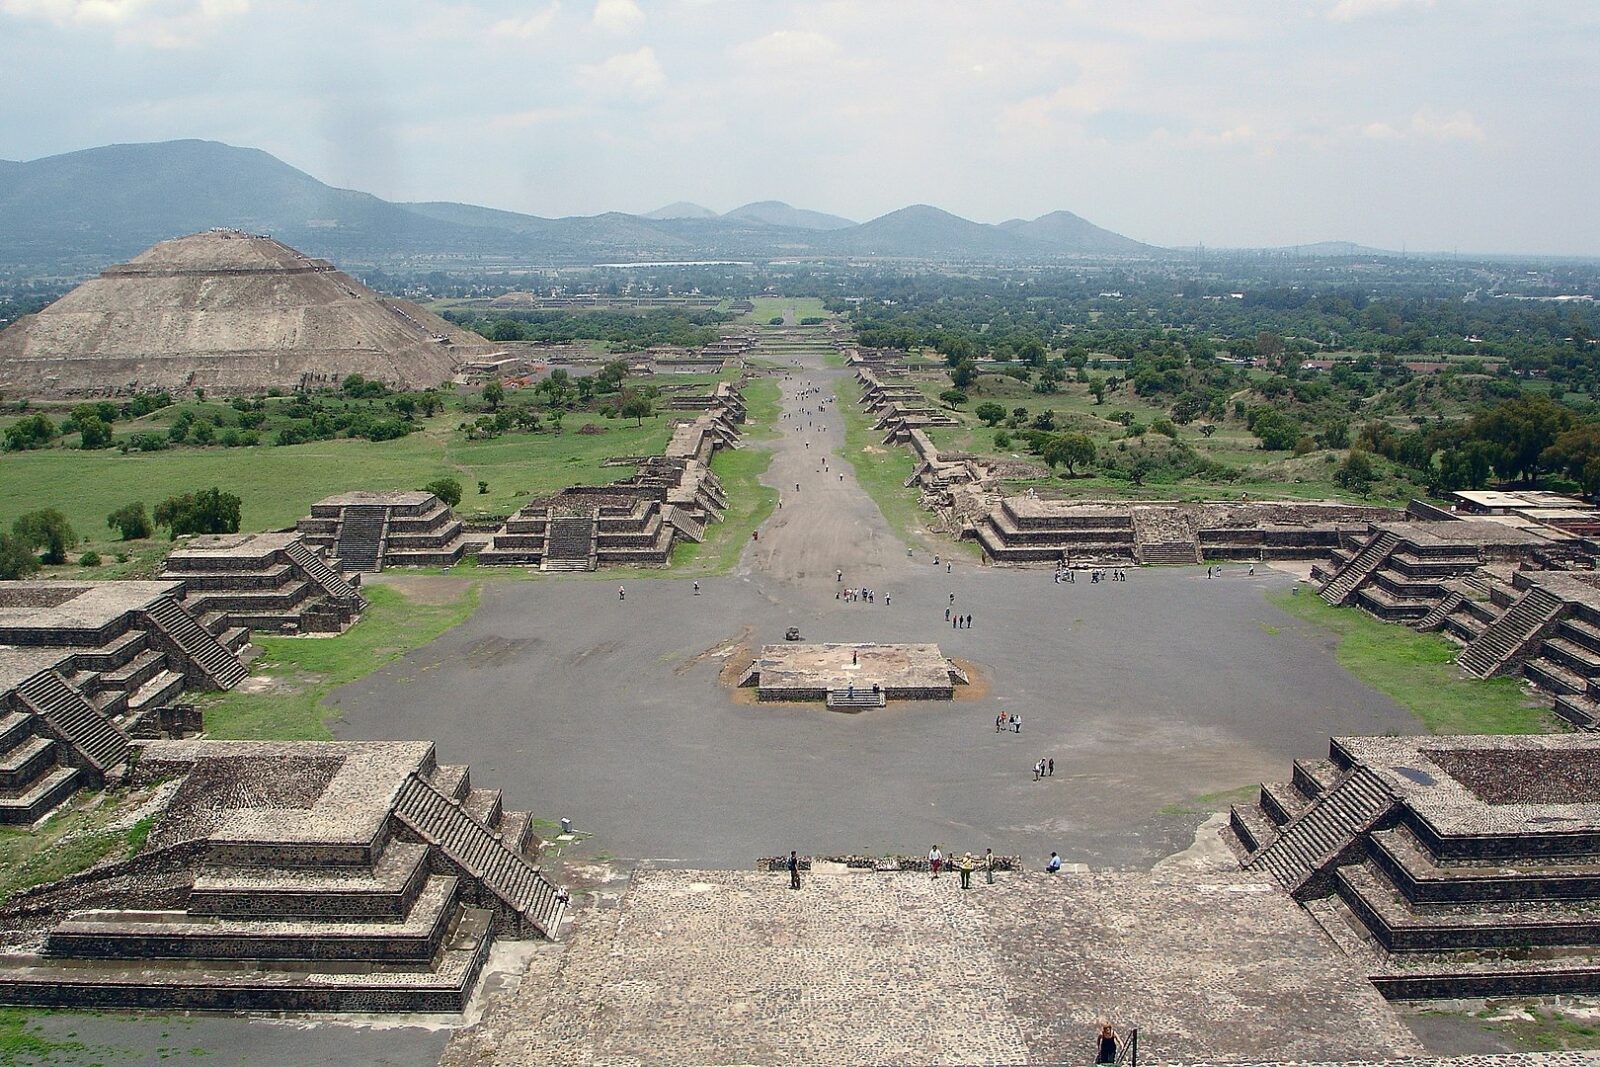 Krwawy kult dał początek największemu miastu Mezoameryki. Ta świątynia dostarcza mrożących krew w żyłach dowodów